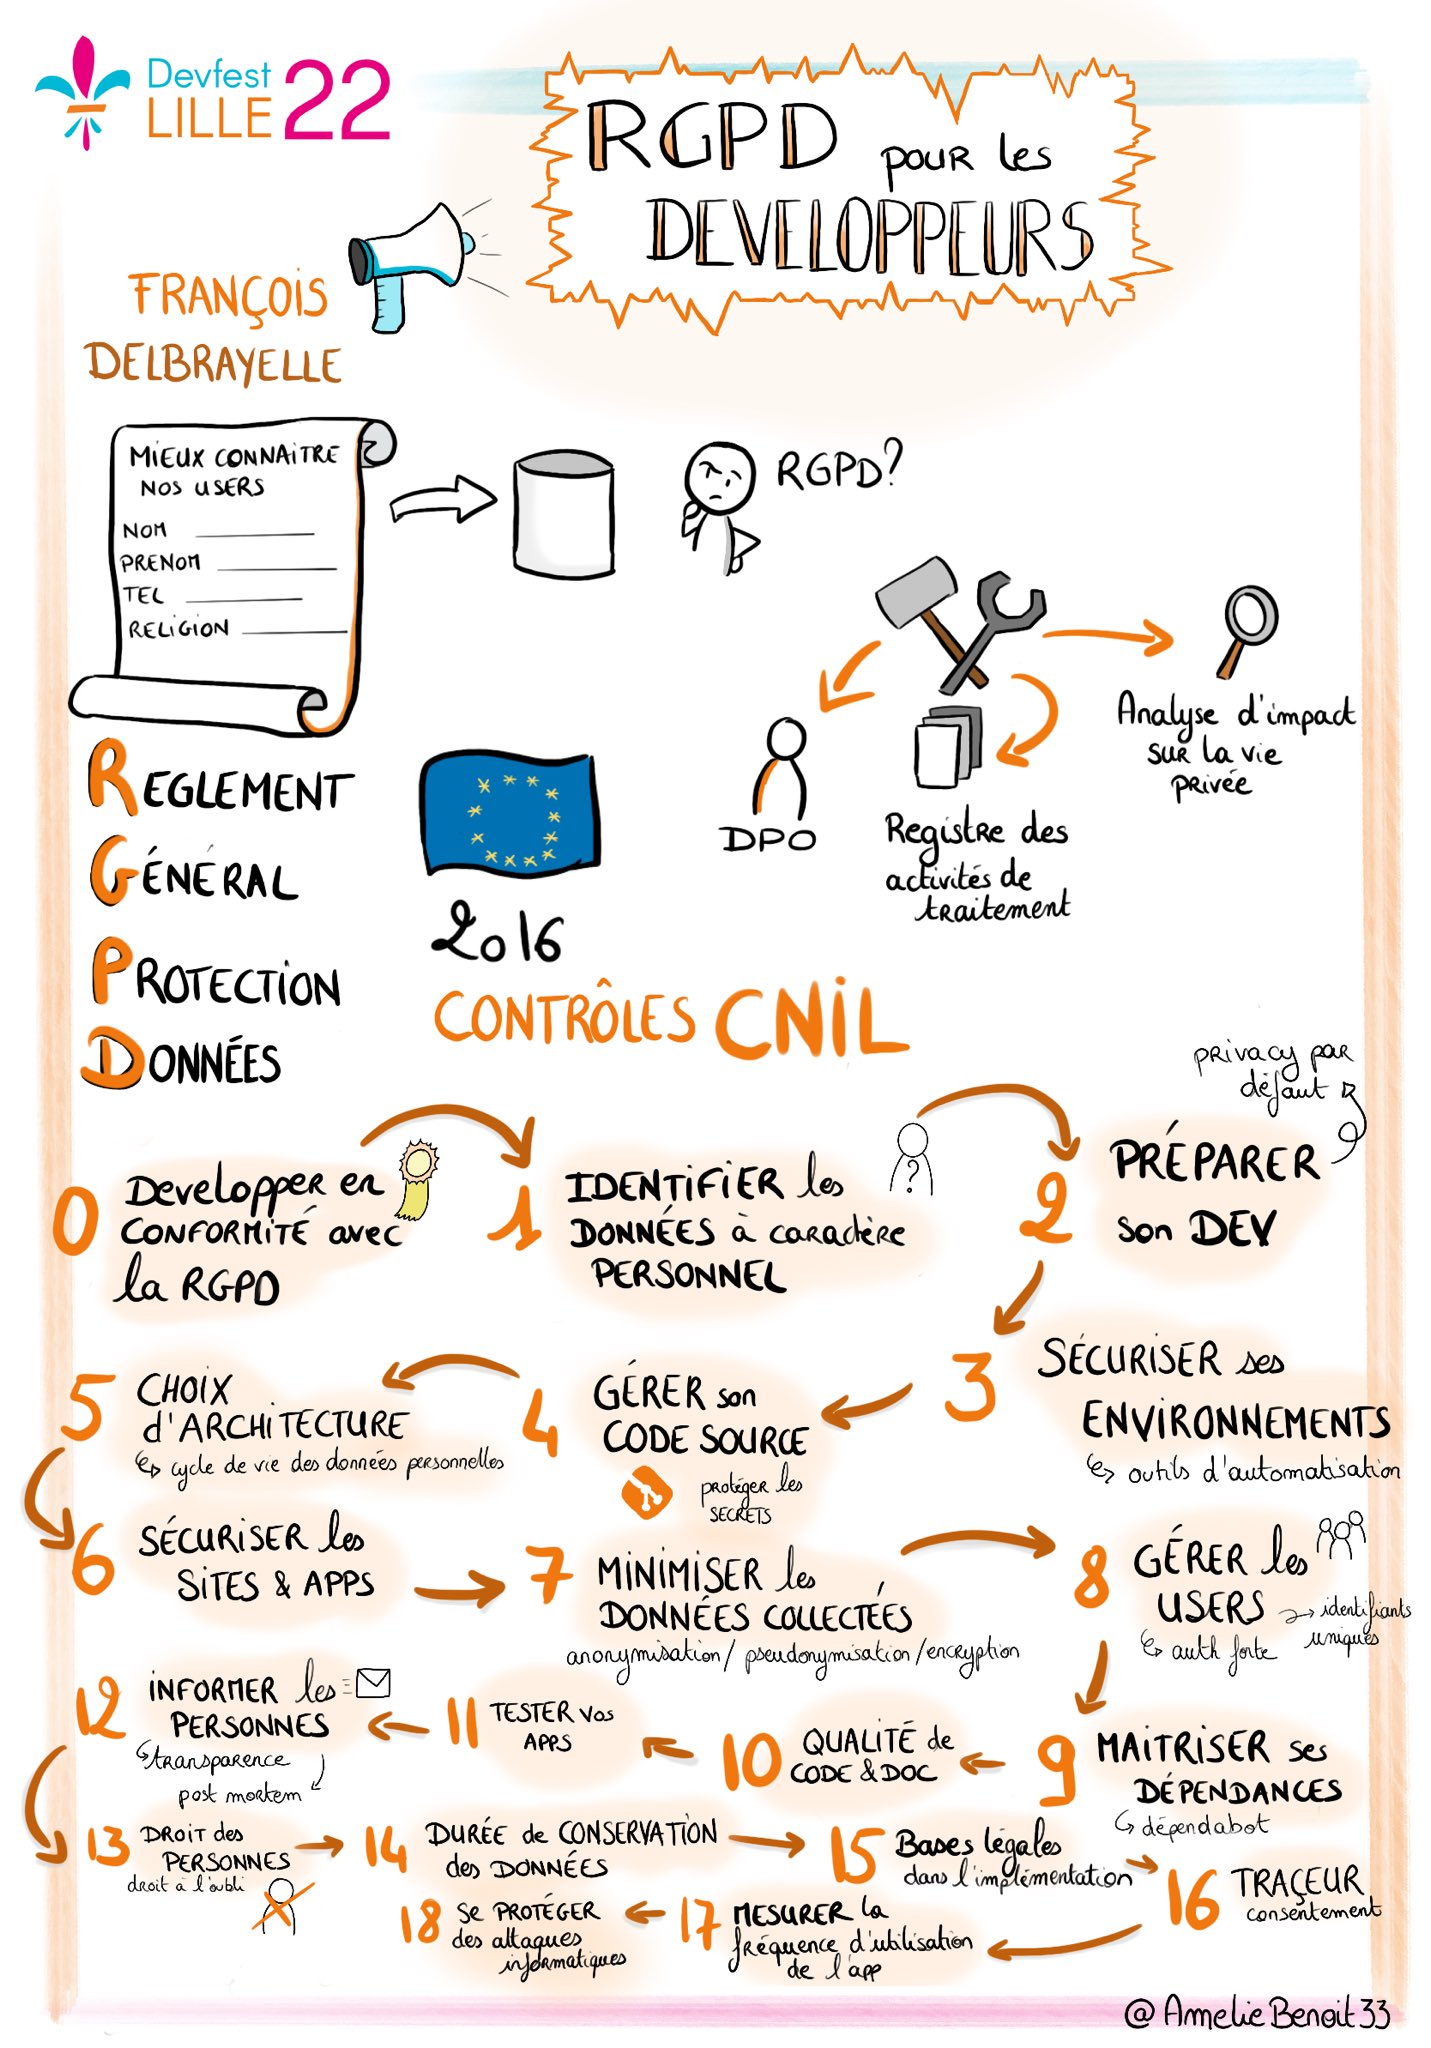 Sketchnote de la conférence de François Delbrayelle sur le thème "RGPD pour les développeurs"